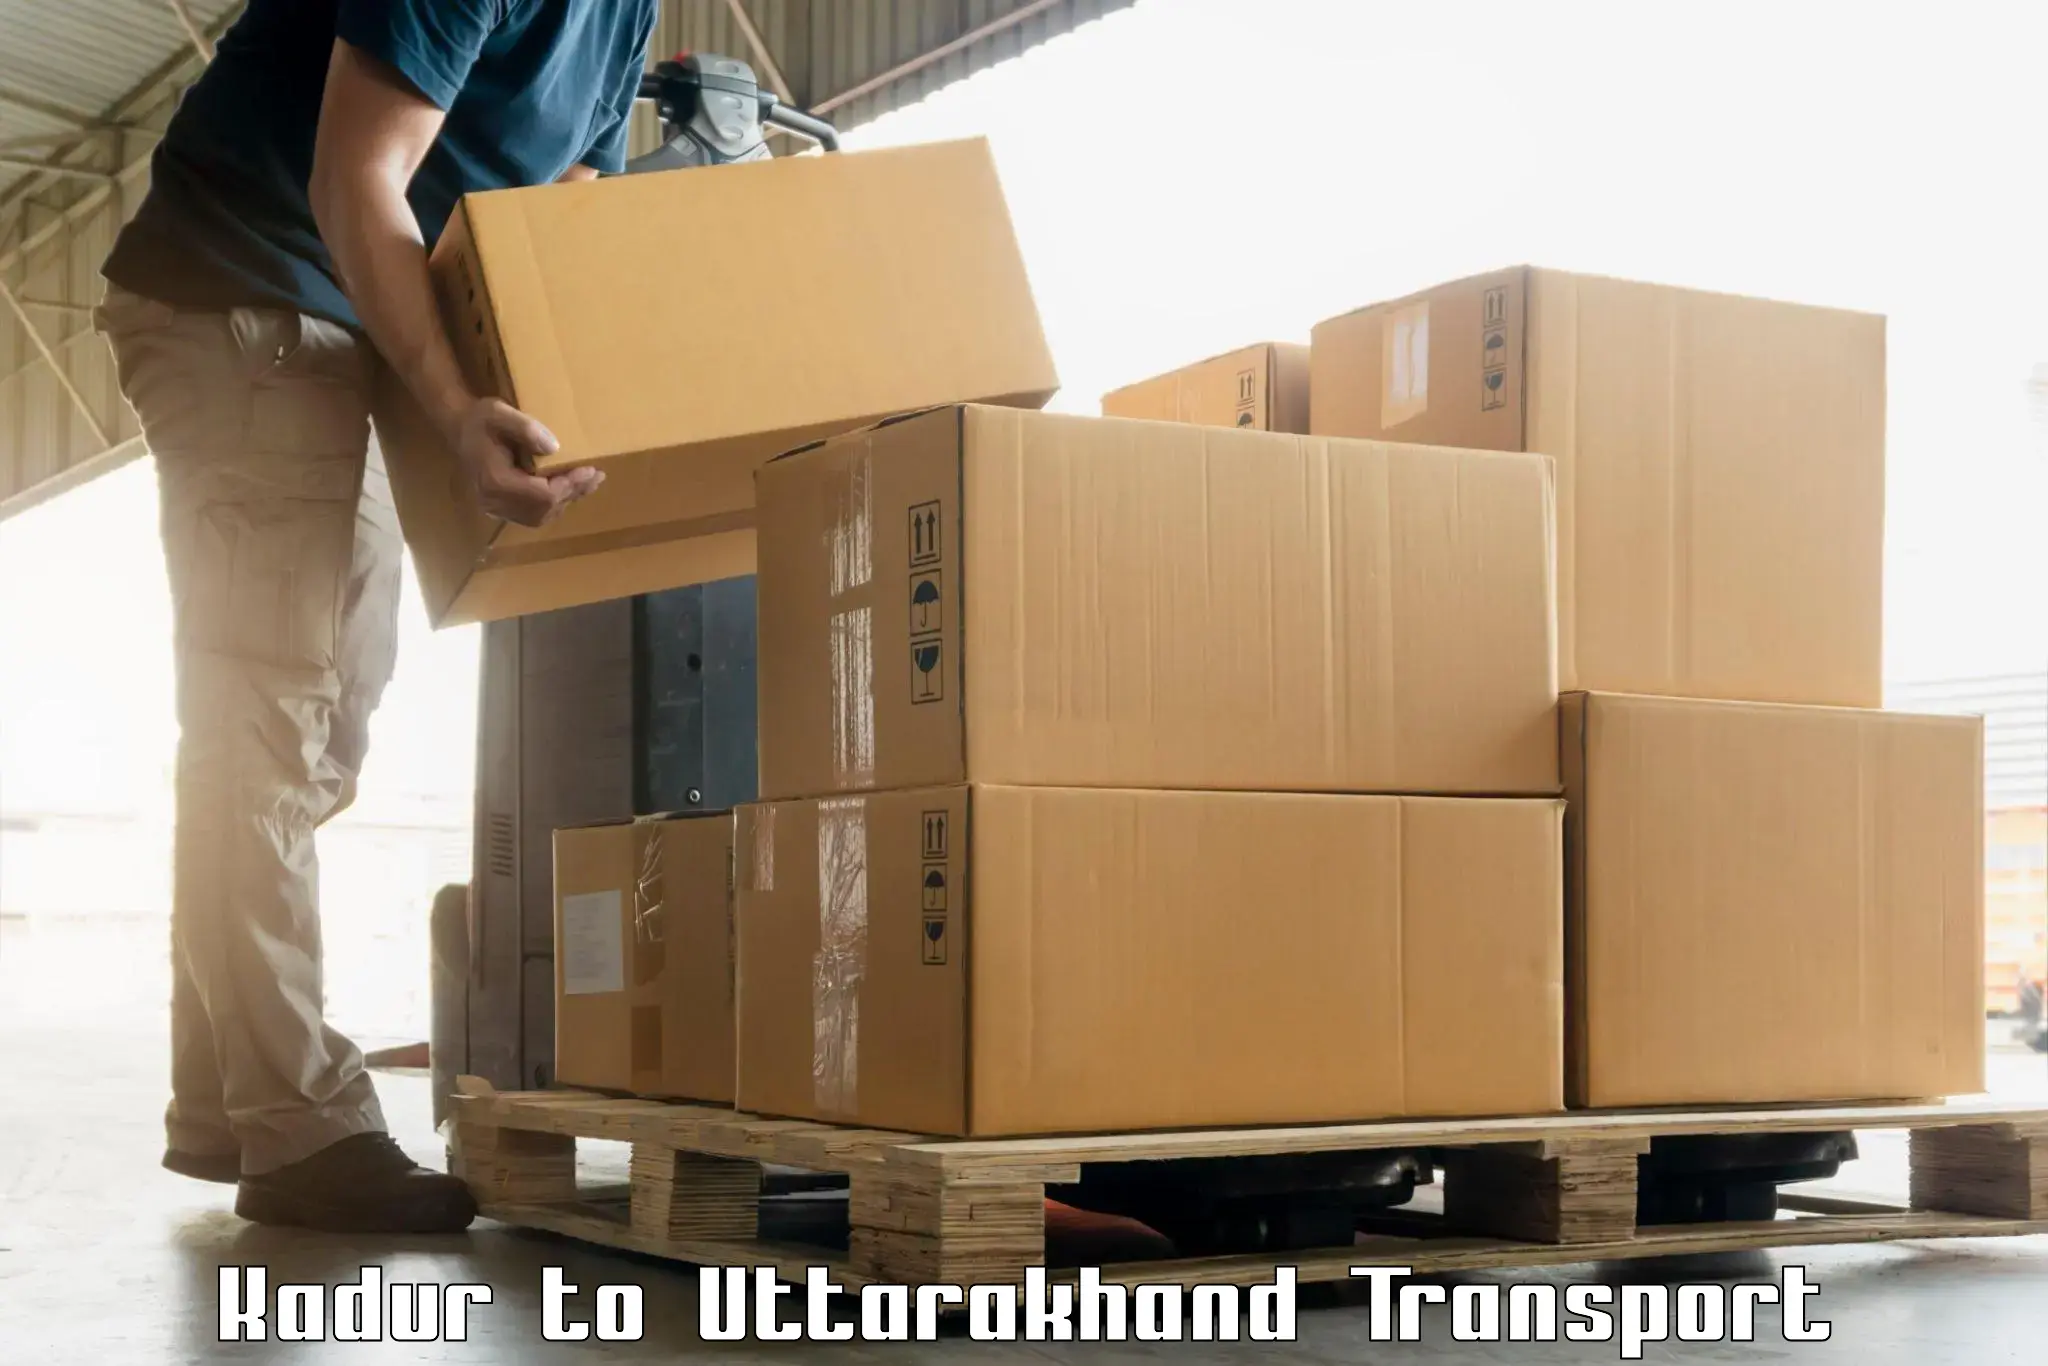 Furniture transport service Kadur to Lansdowne